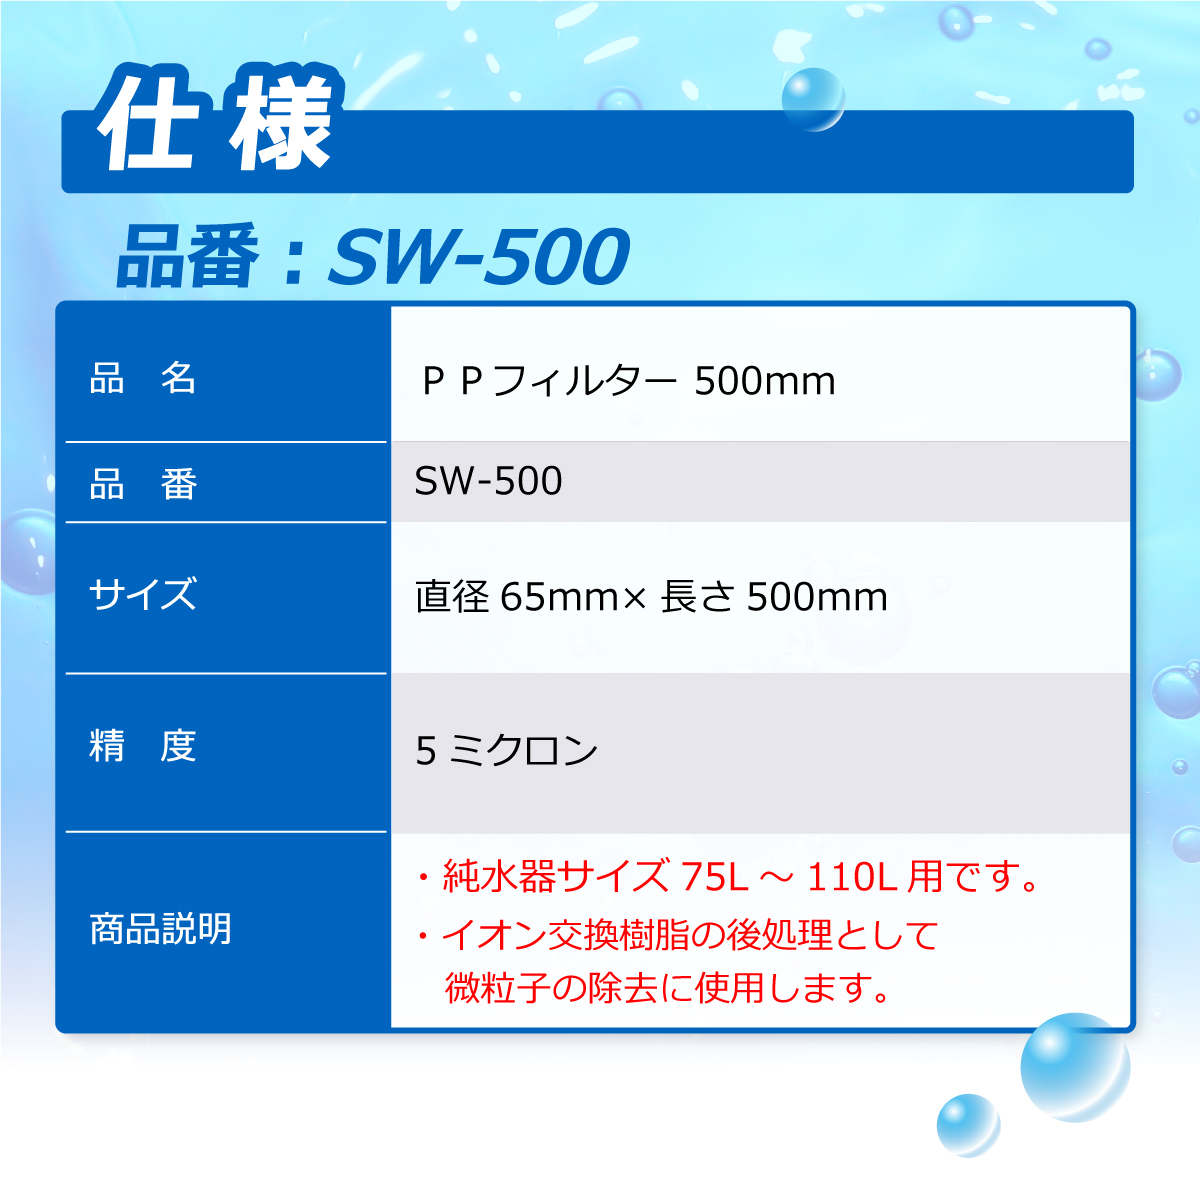 PPフィルター SW-500 500mm 5ミクロン